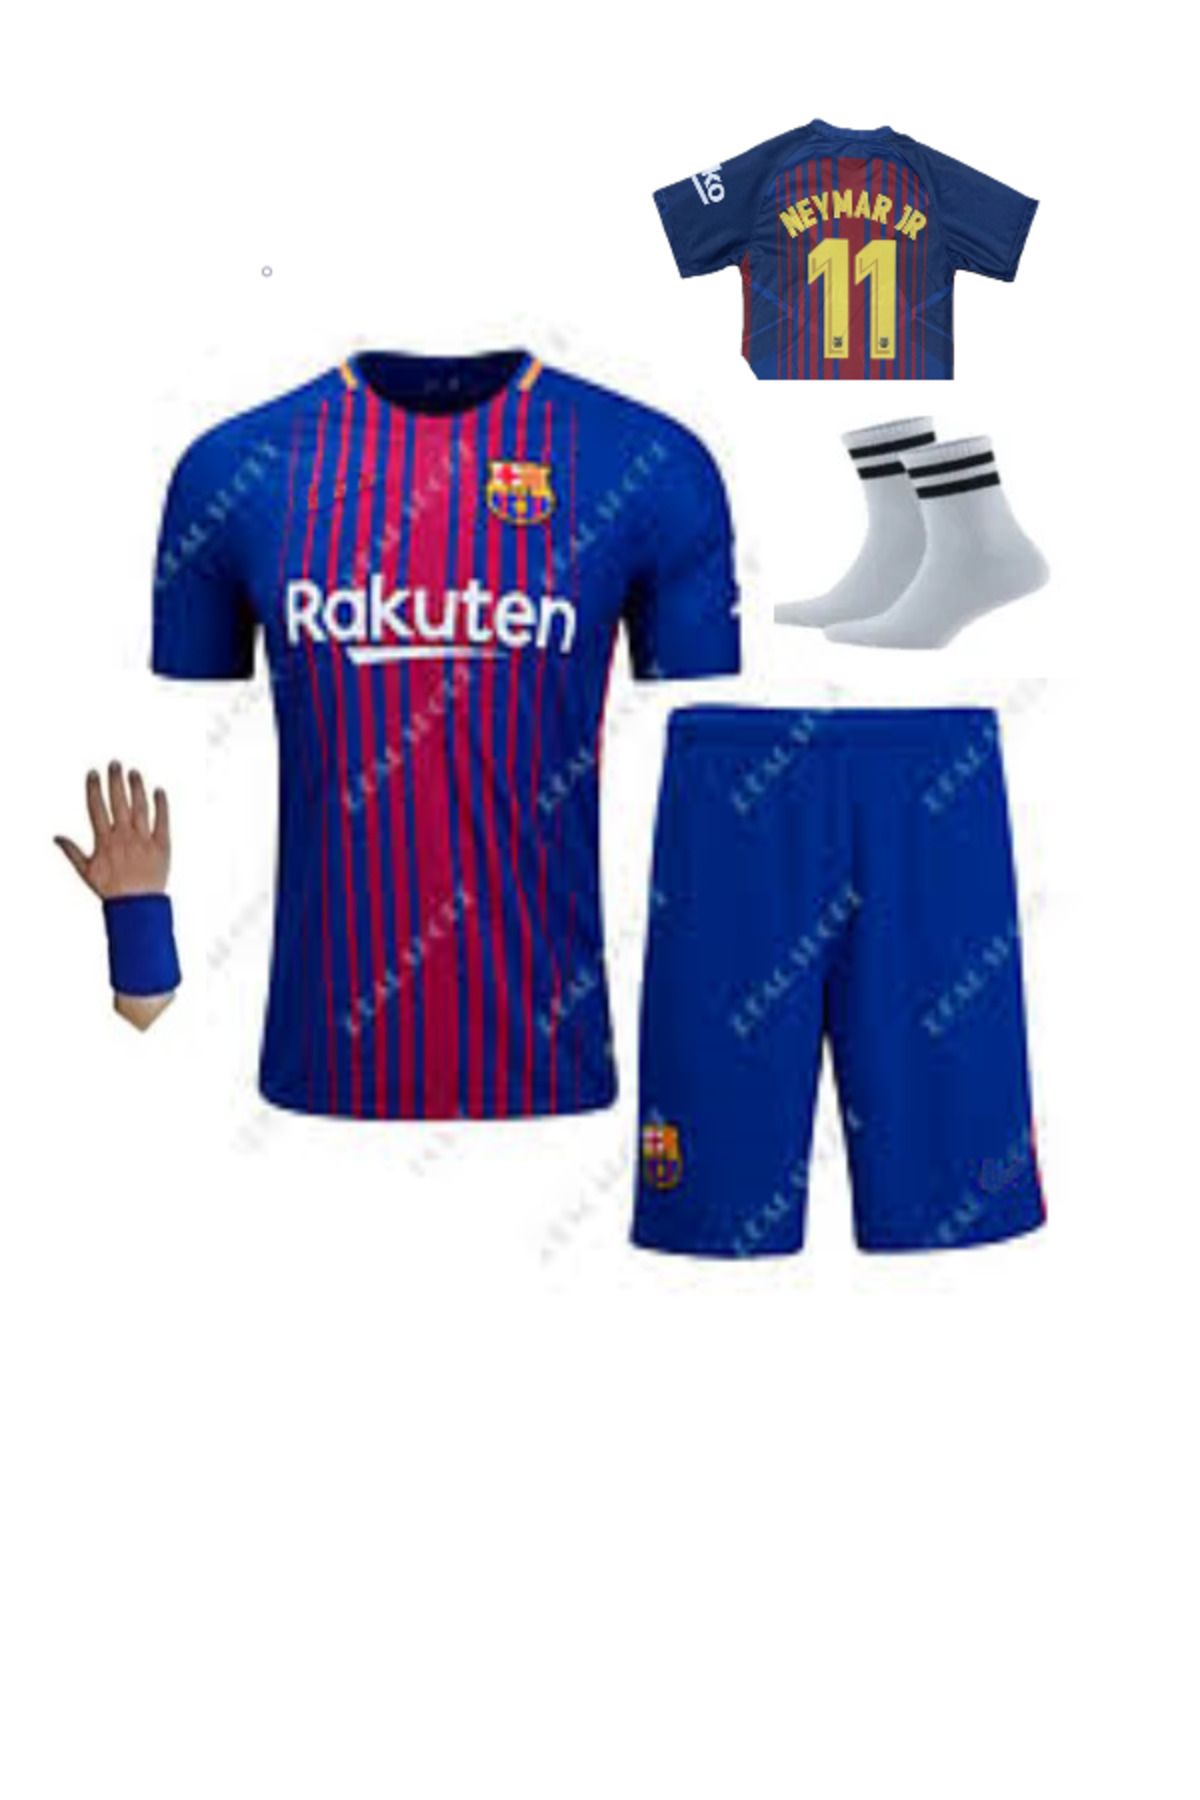 yenteks Neymar Özel Tasarım Barcelona Çocuk Futbol Forması Bordo-lacivert 4'lü Set 2018 Retro